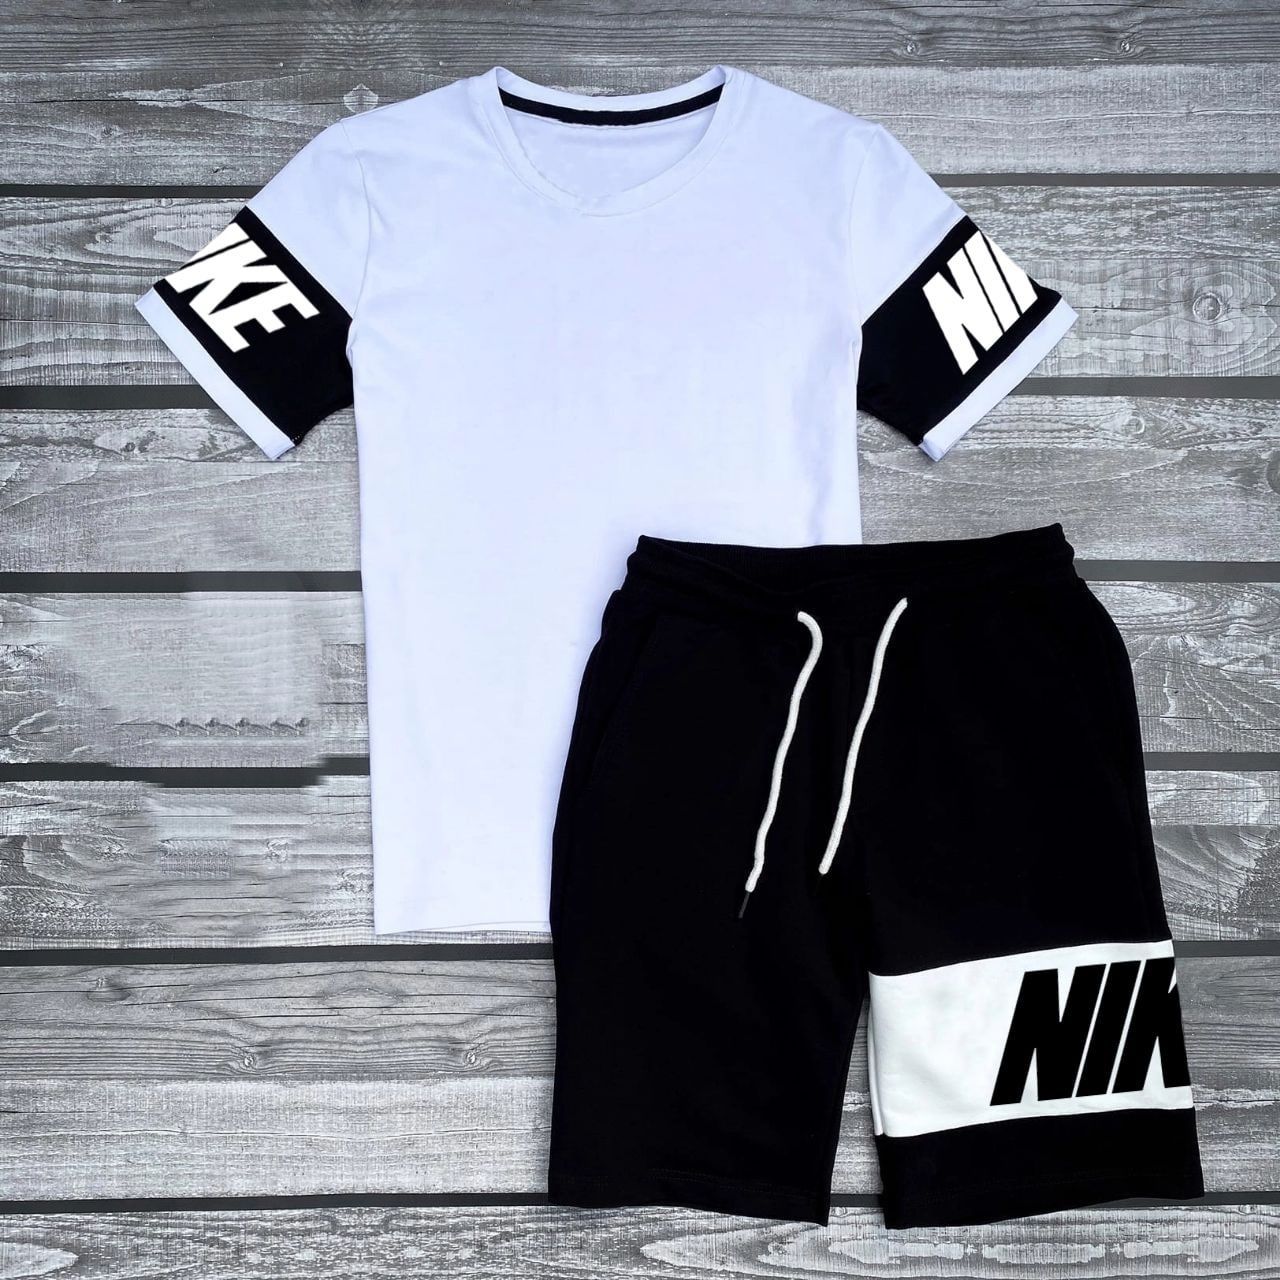 Чоловічі шорти + футболка Nike Nasa